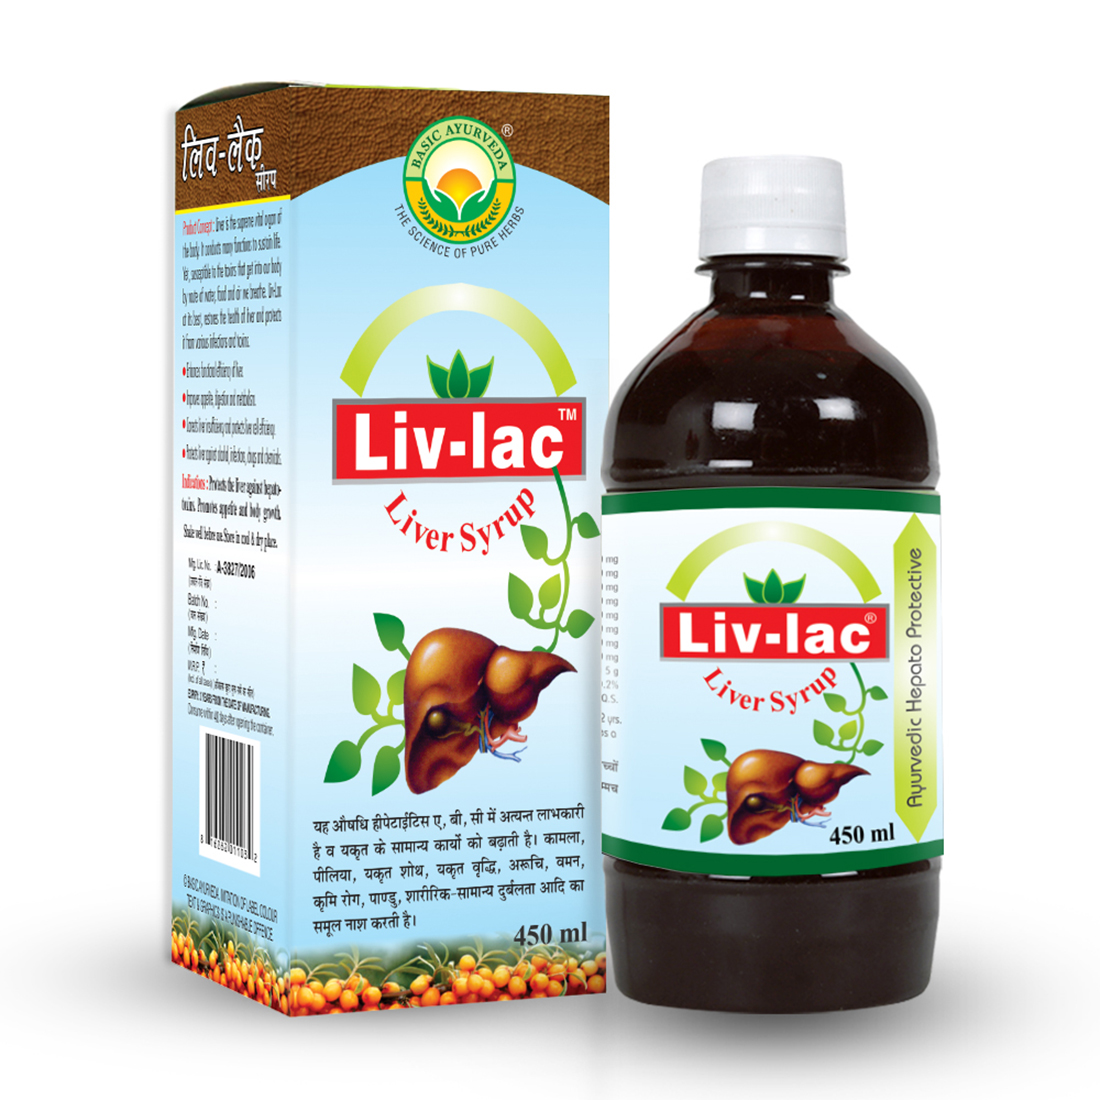 Liv-lac Liver Syrup